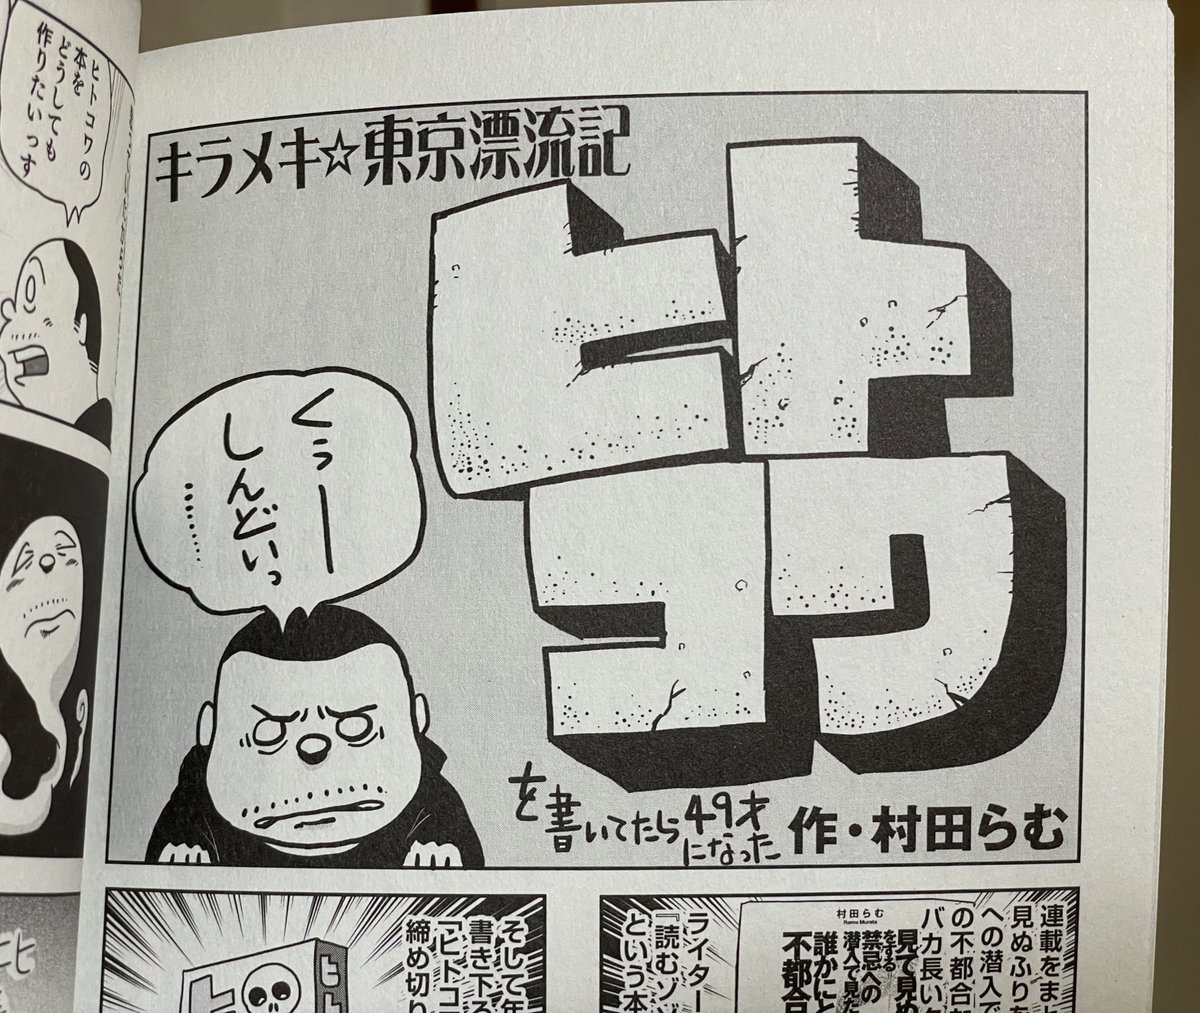 今月の、紙の爆弾 キラメキ東京漂流記は、ヒトコワ単行本描いてたら49歳になった話です。 